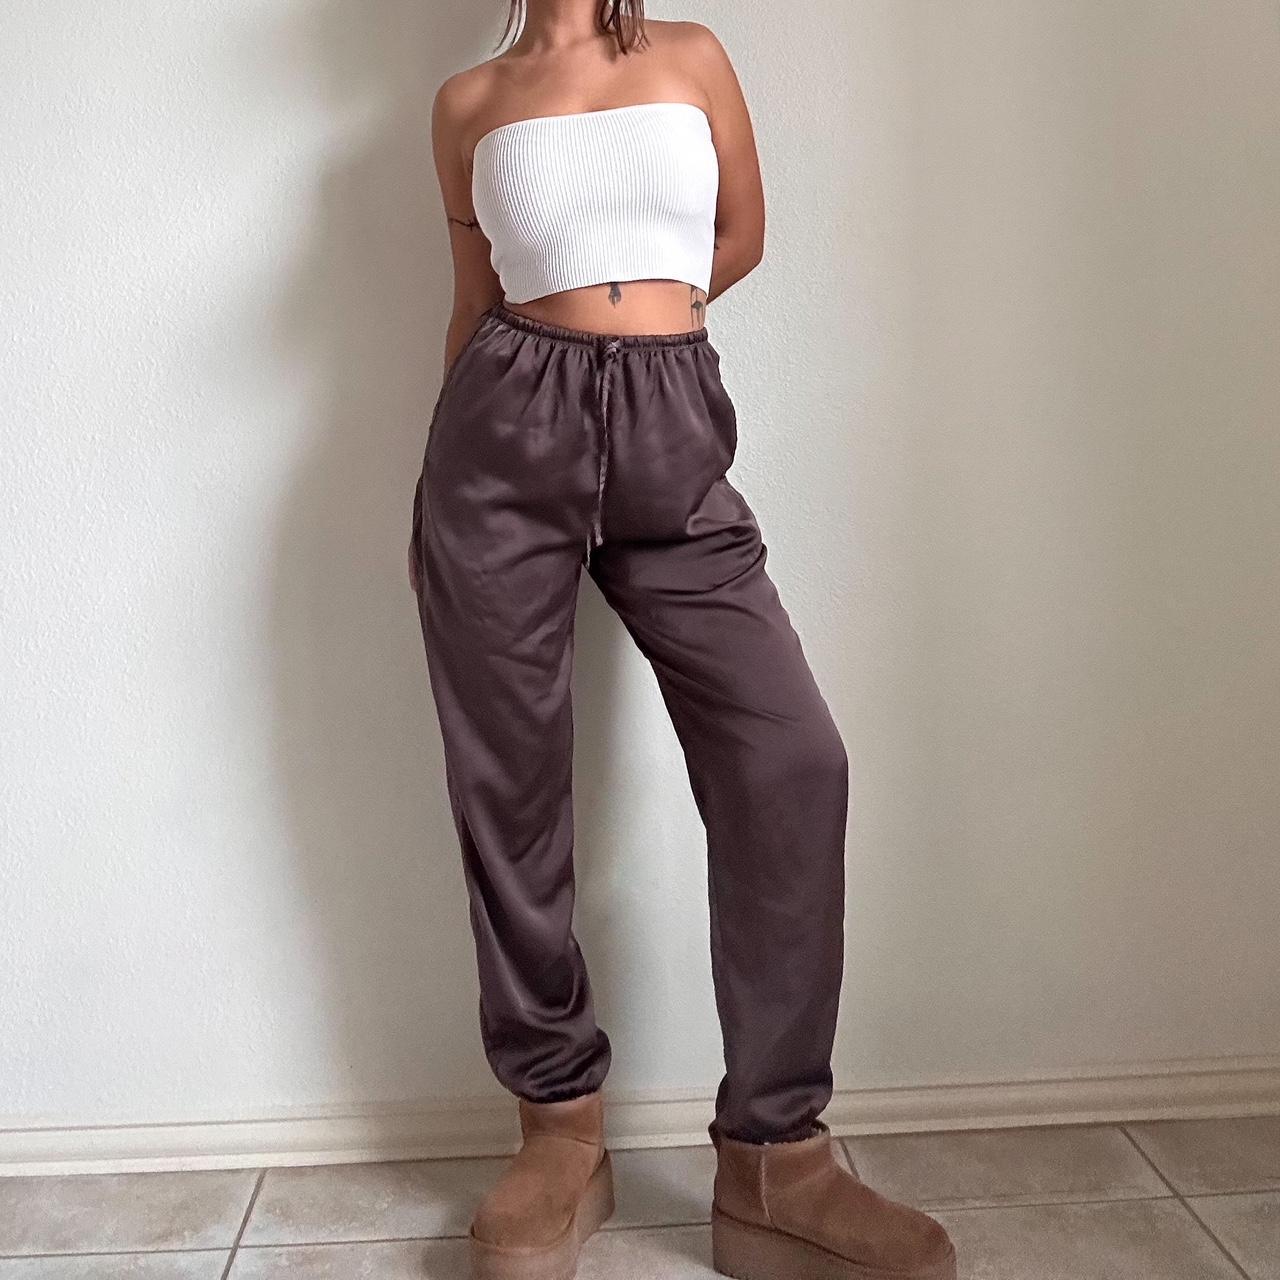 brown silk jogger pants 🐻 waist 26-27 inches, hip - Depop